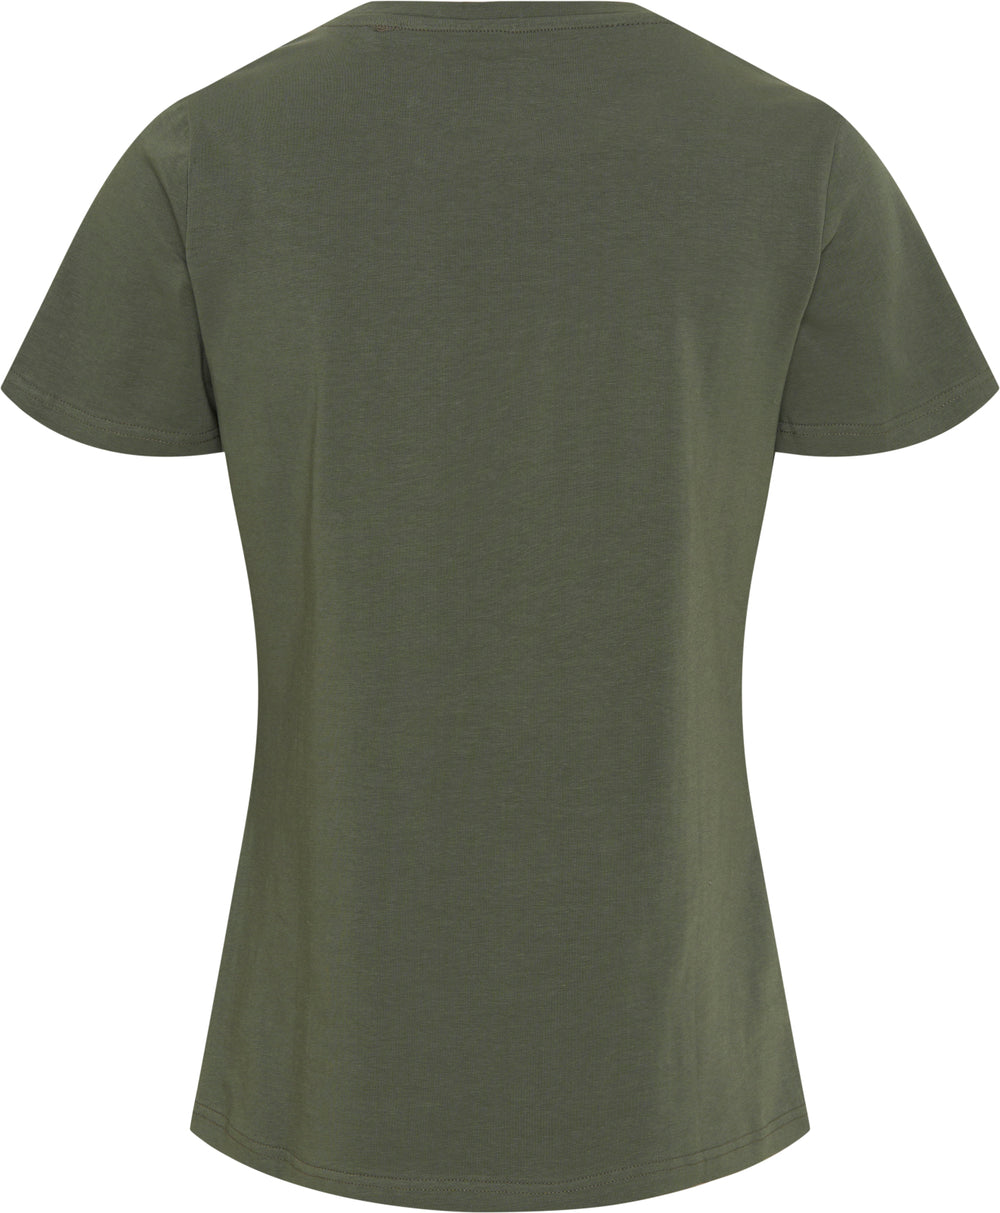 Equipage Melina T-shirt